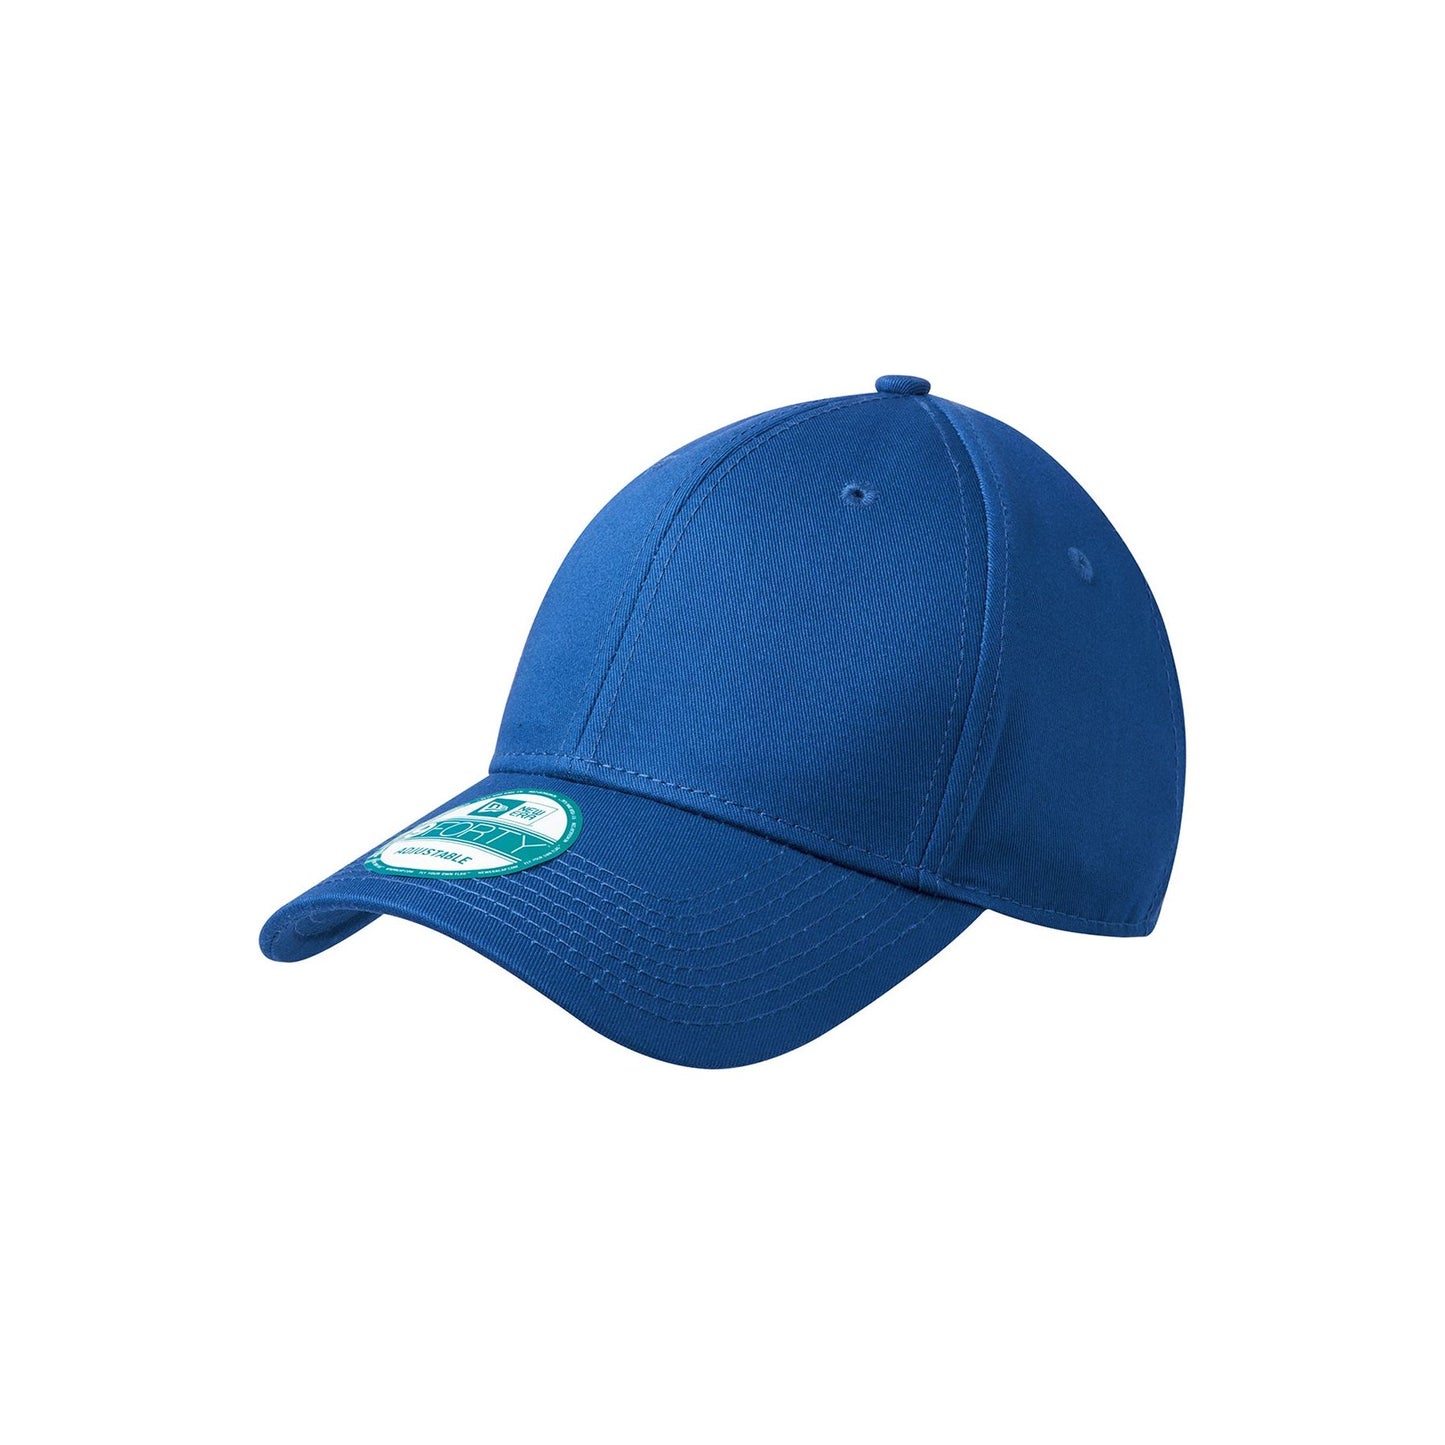 New Era® - Adjustable Structured Cap